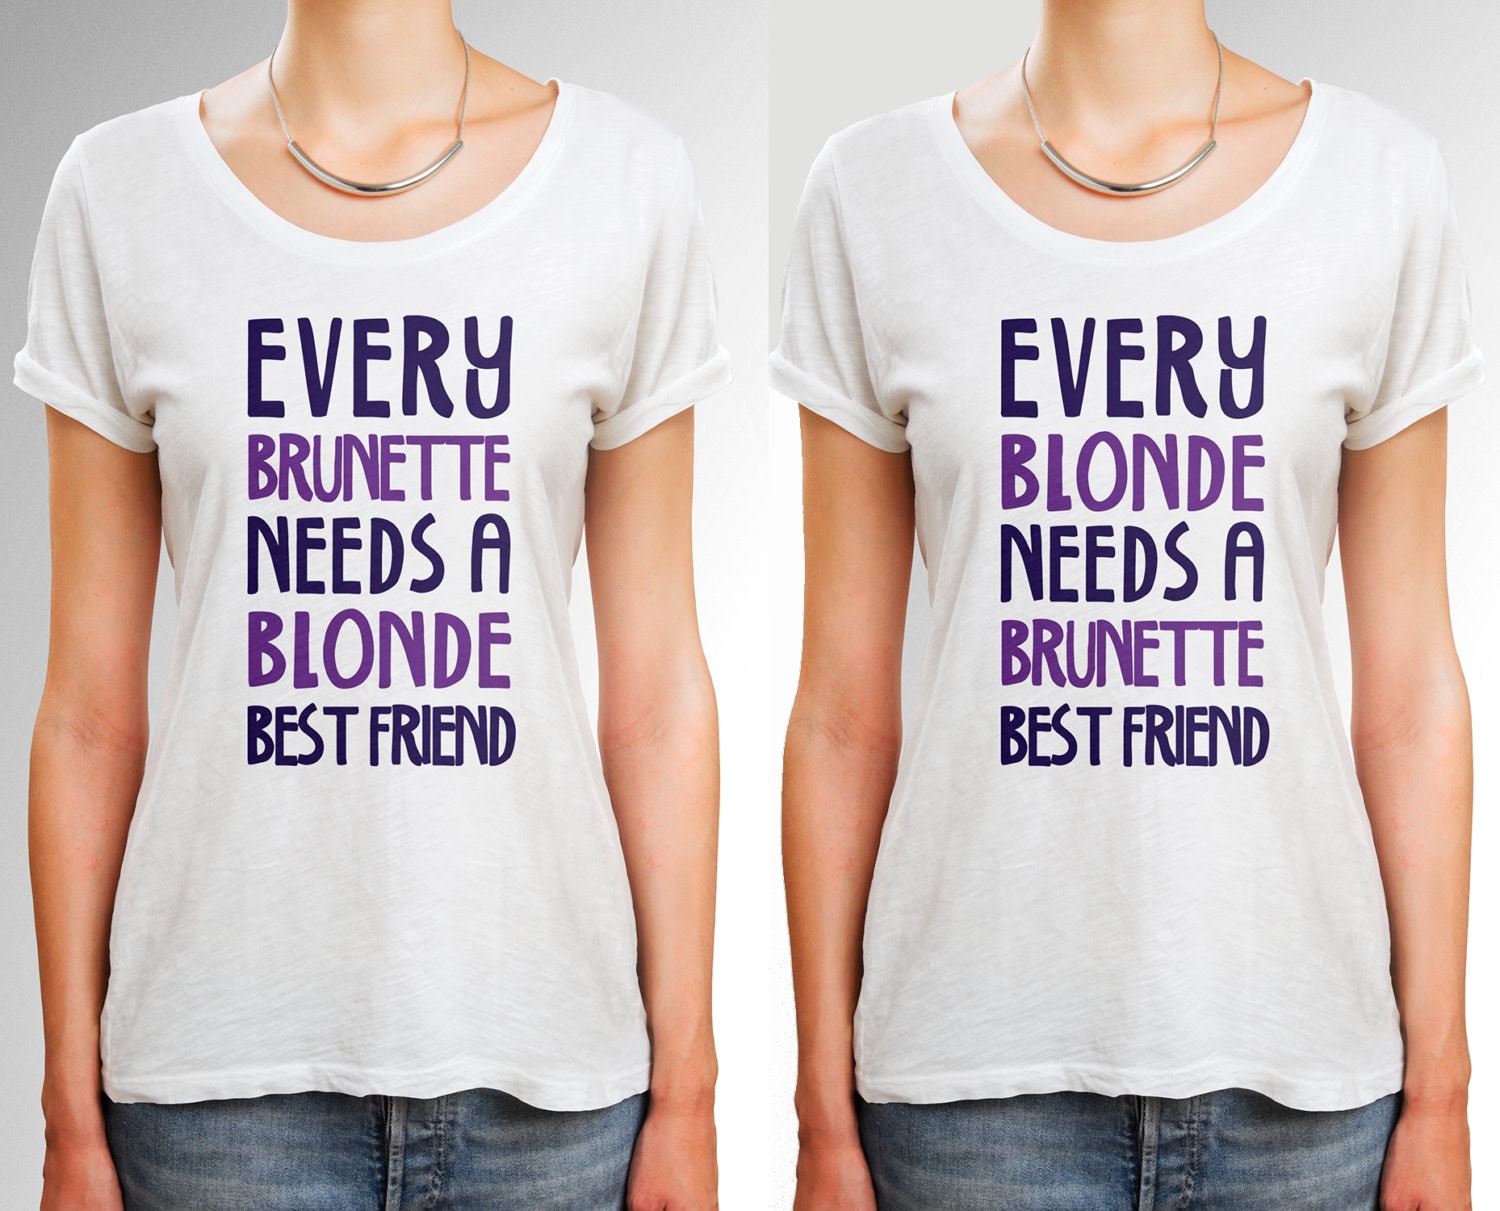 Blonde brunette best friend shirts